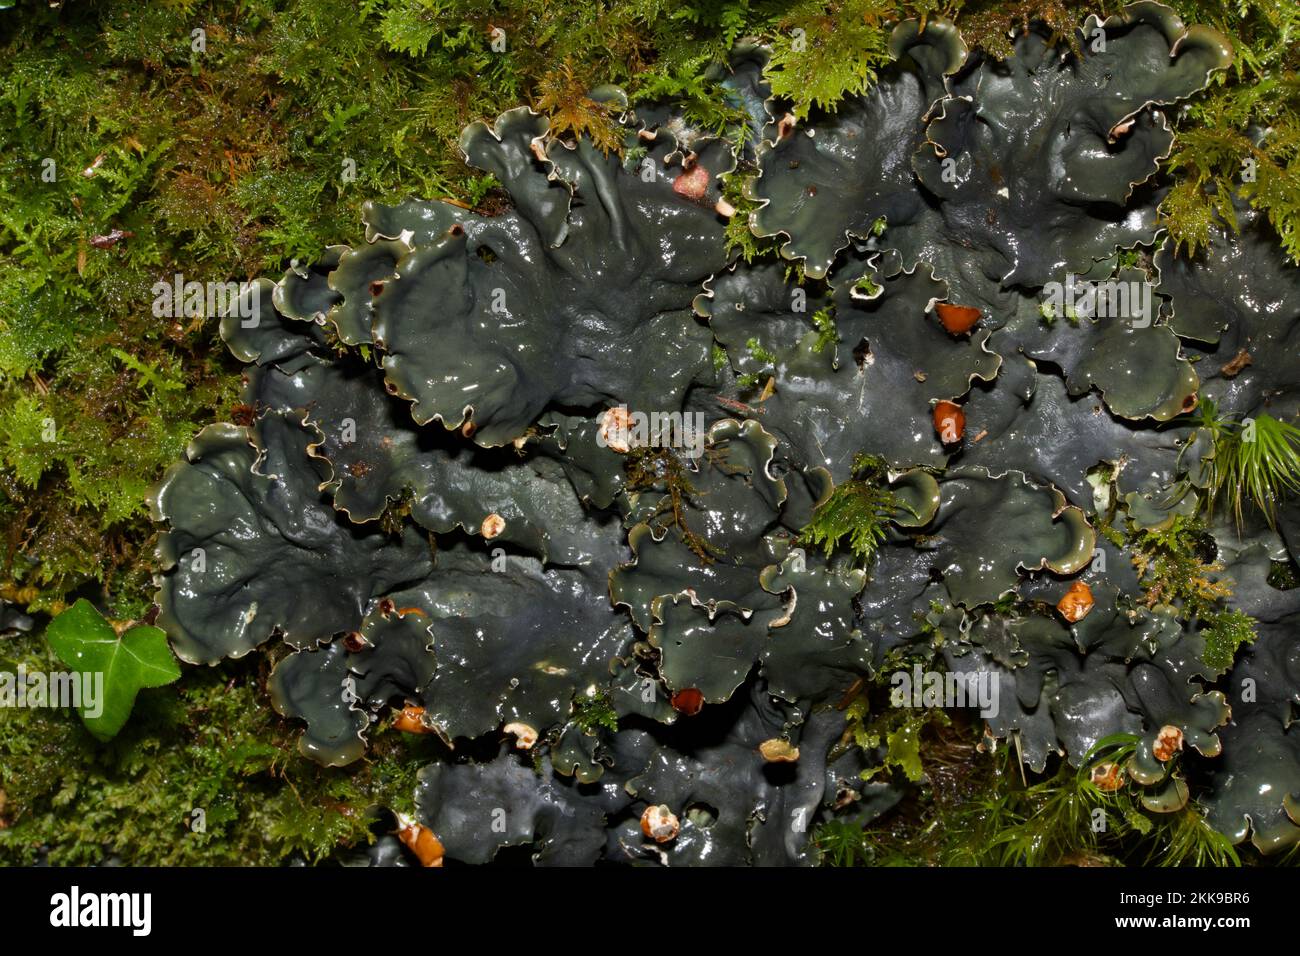 Peltigera horizontalis (lichen de chien) est un champignon lichenisé de la famille des Peltigeraceae présent sur des rochers mousseux, des bases d'arbres et sur gazon court. Banque D'Images